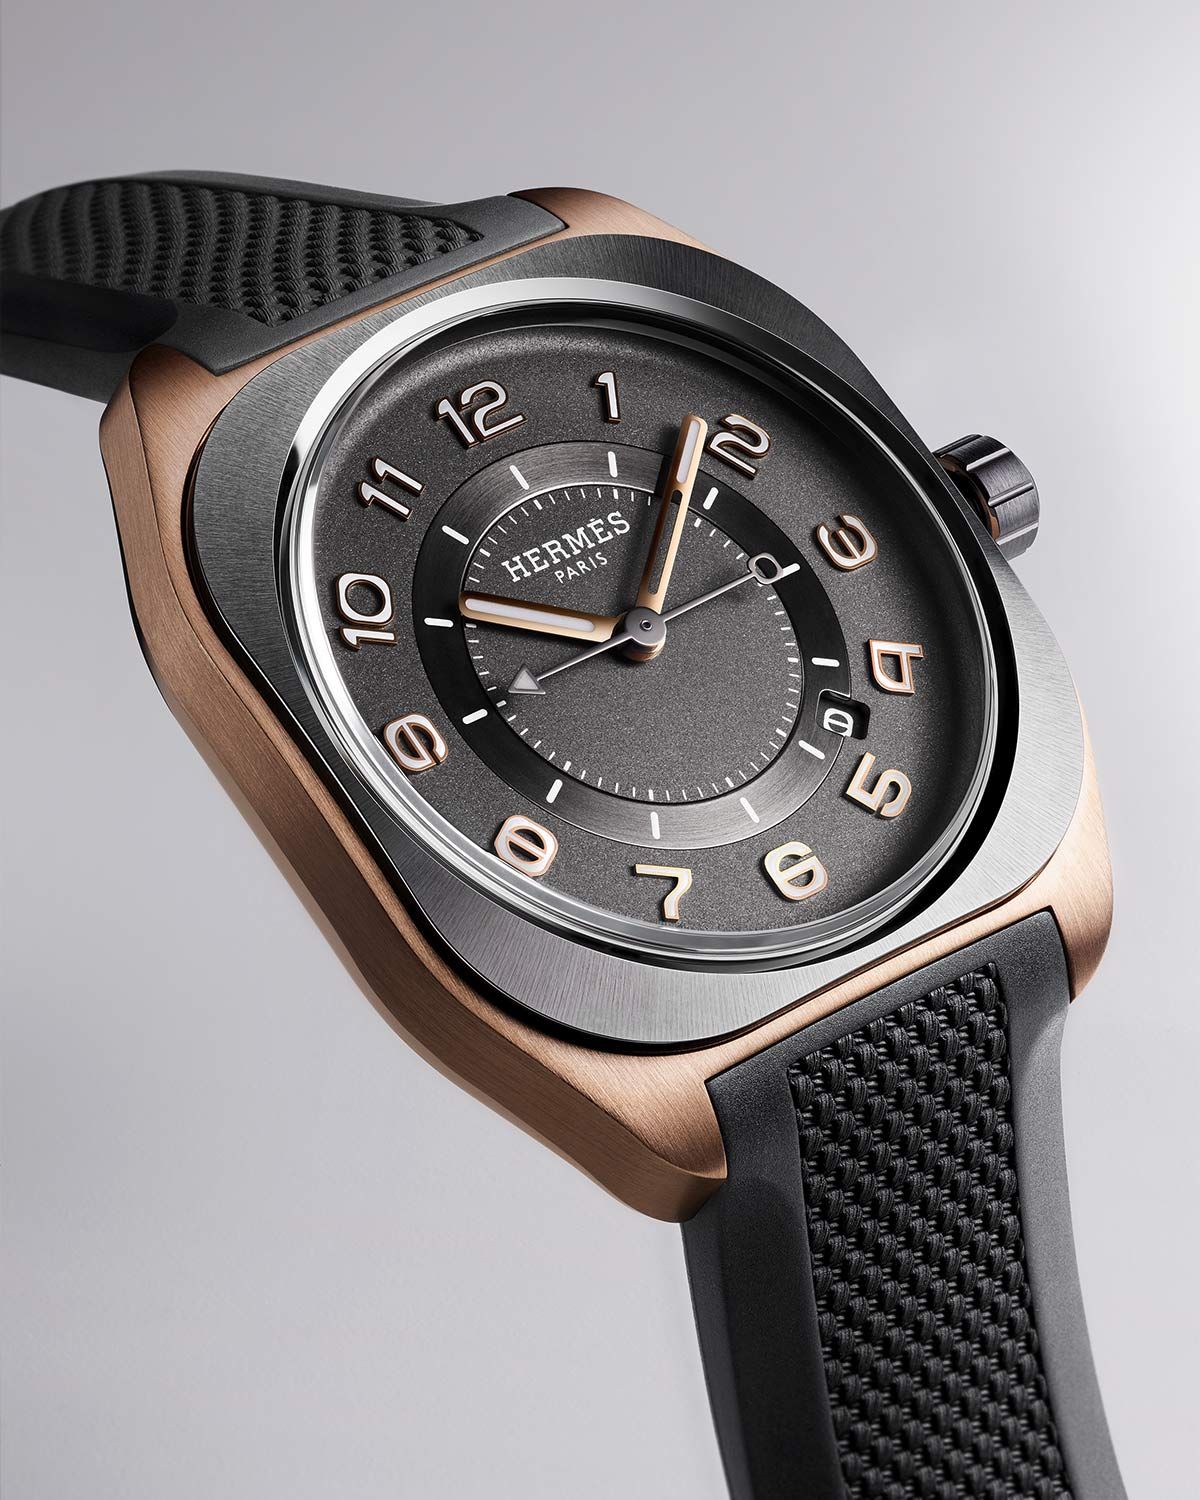 エルメス（Hermès）の腕時計「エルメス H08」グラスファイバー素材の4